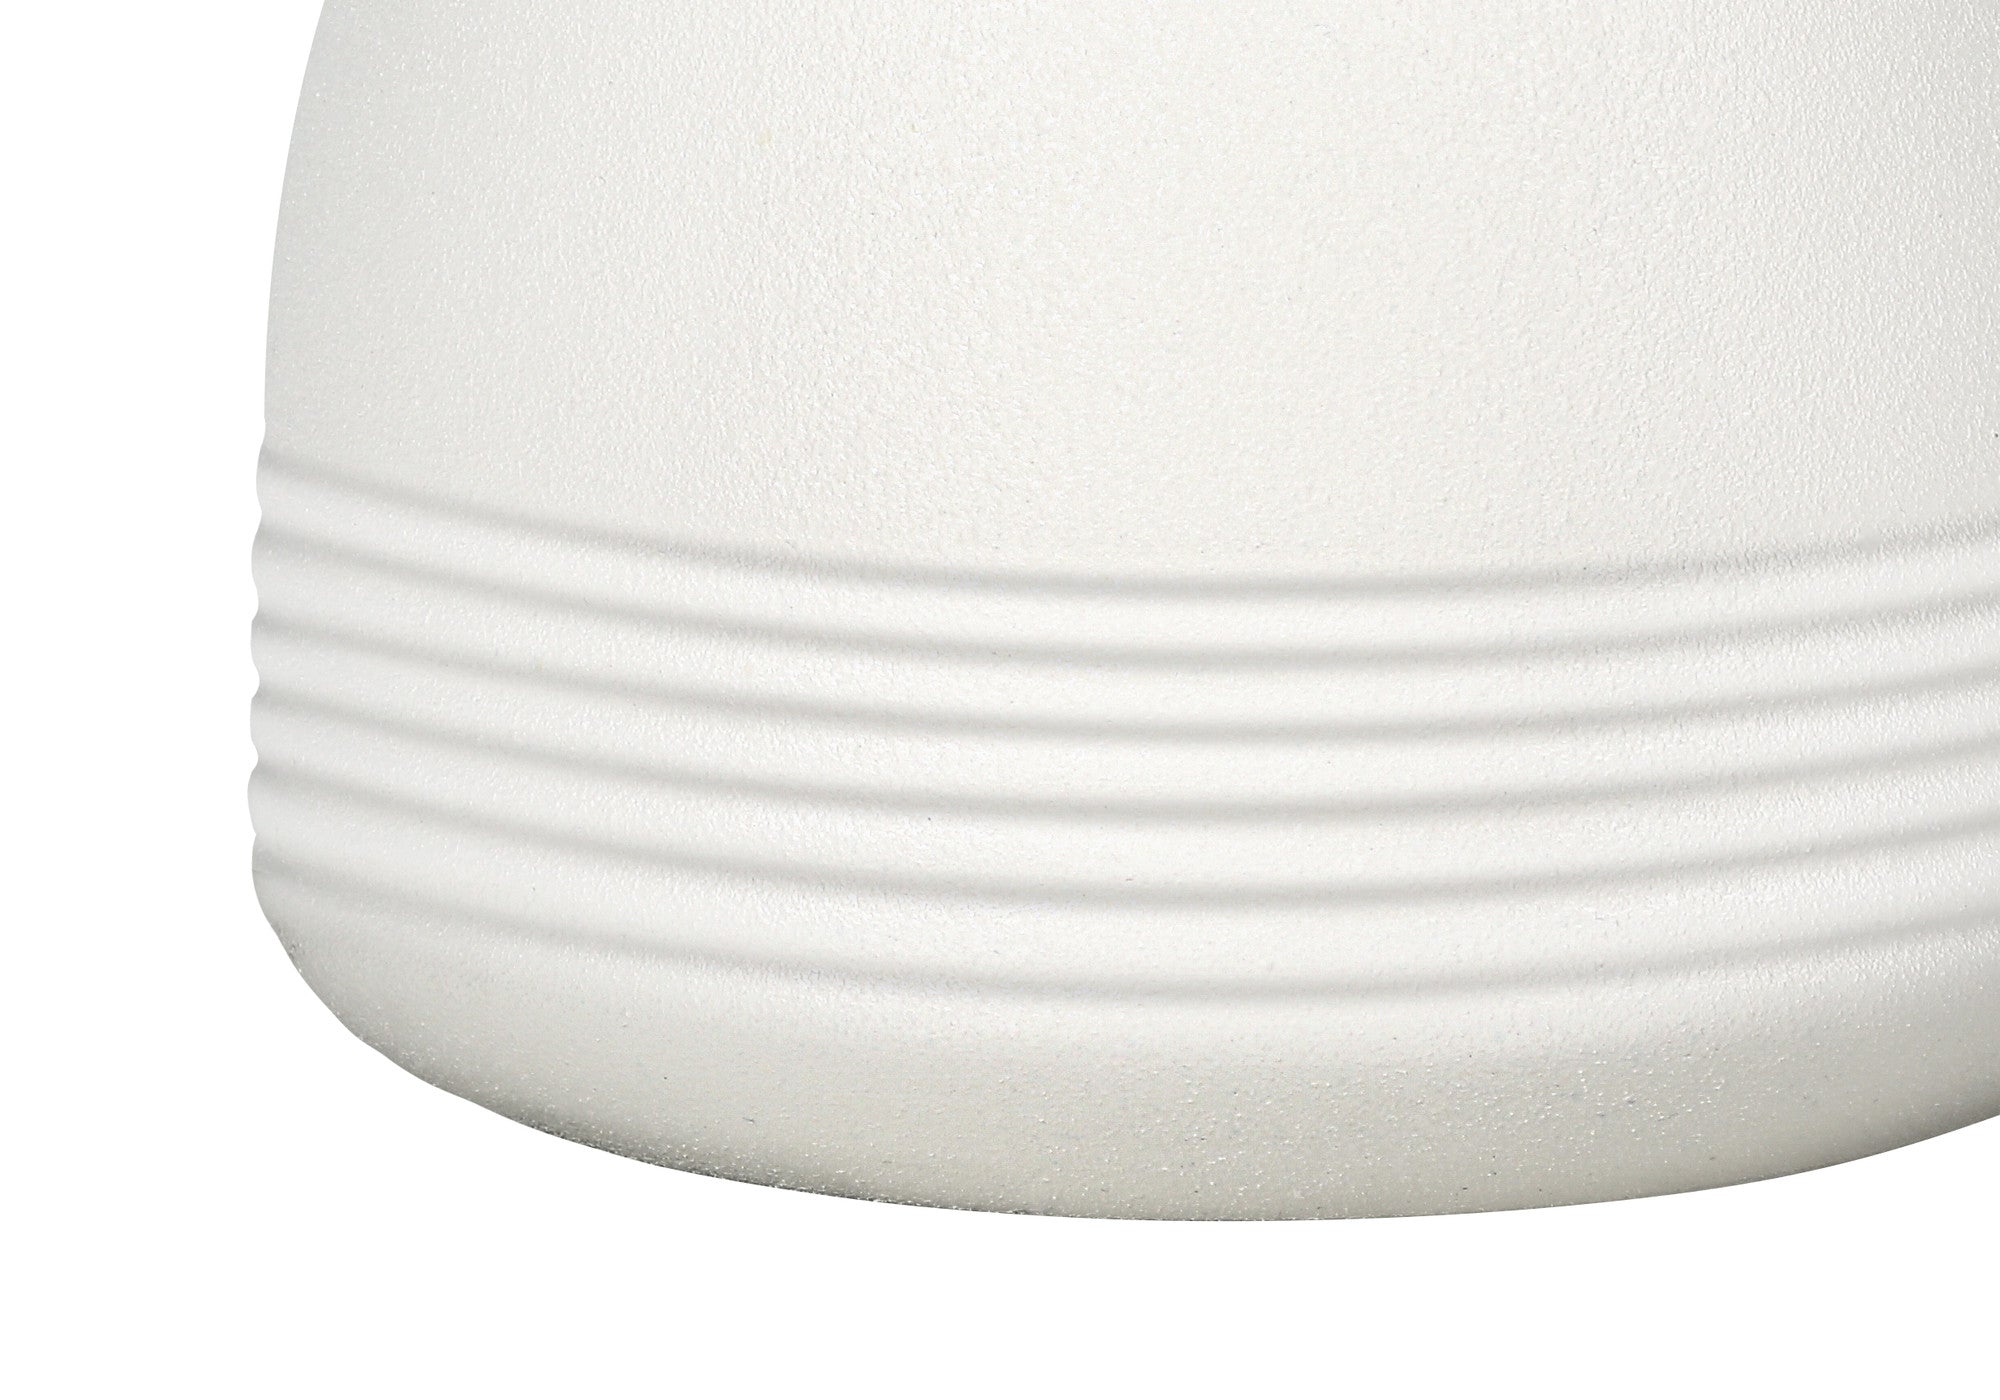 17" Cream Ceramic Round Table Lamp With Cream Drum Shade